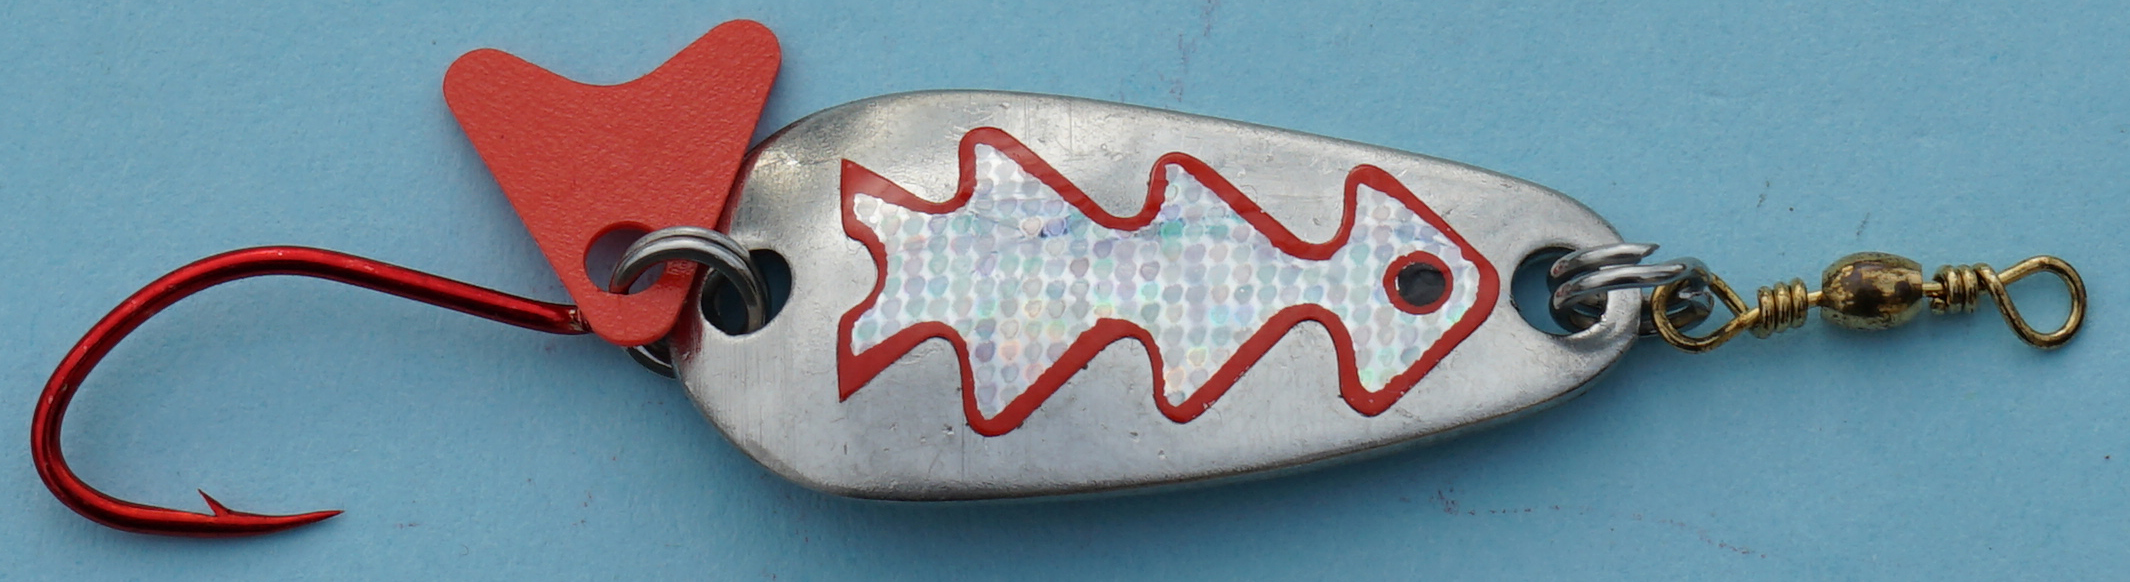 Profi-Spoon aus V2A-Edelstahl mit roten Einzelhaken / Silber mit Reflex-Folie / Silber-Metallic-Dekor / Größe A / 5g / 35mm